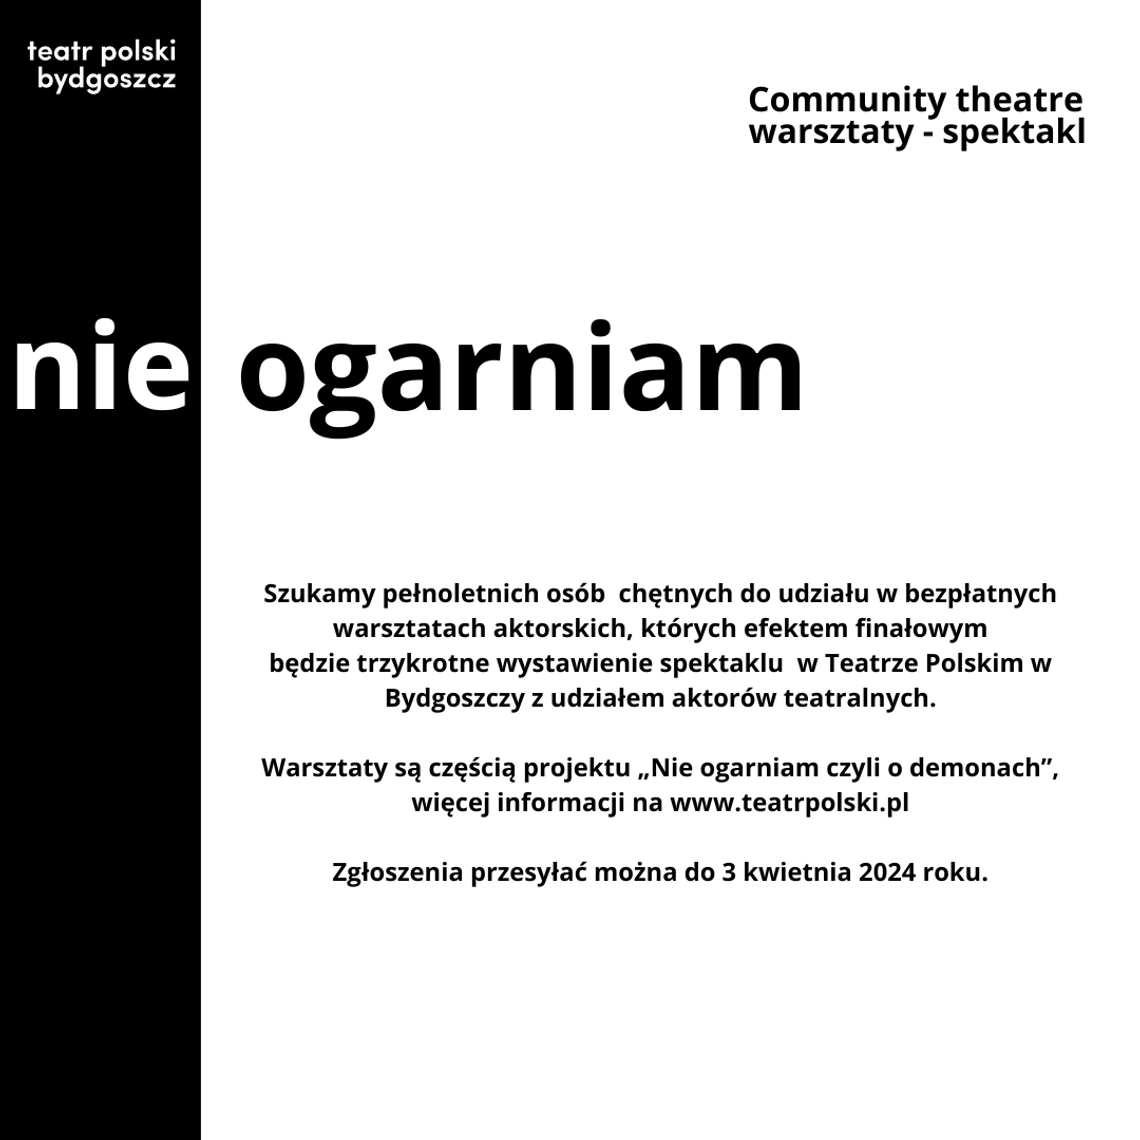 Teatr Polski w Bydgoszczy ogłasza nabór do projektu "Nie ogarniam czyli o demonach"